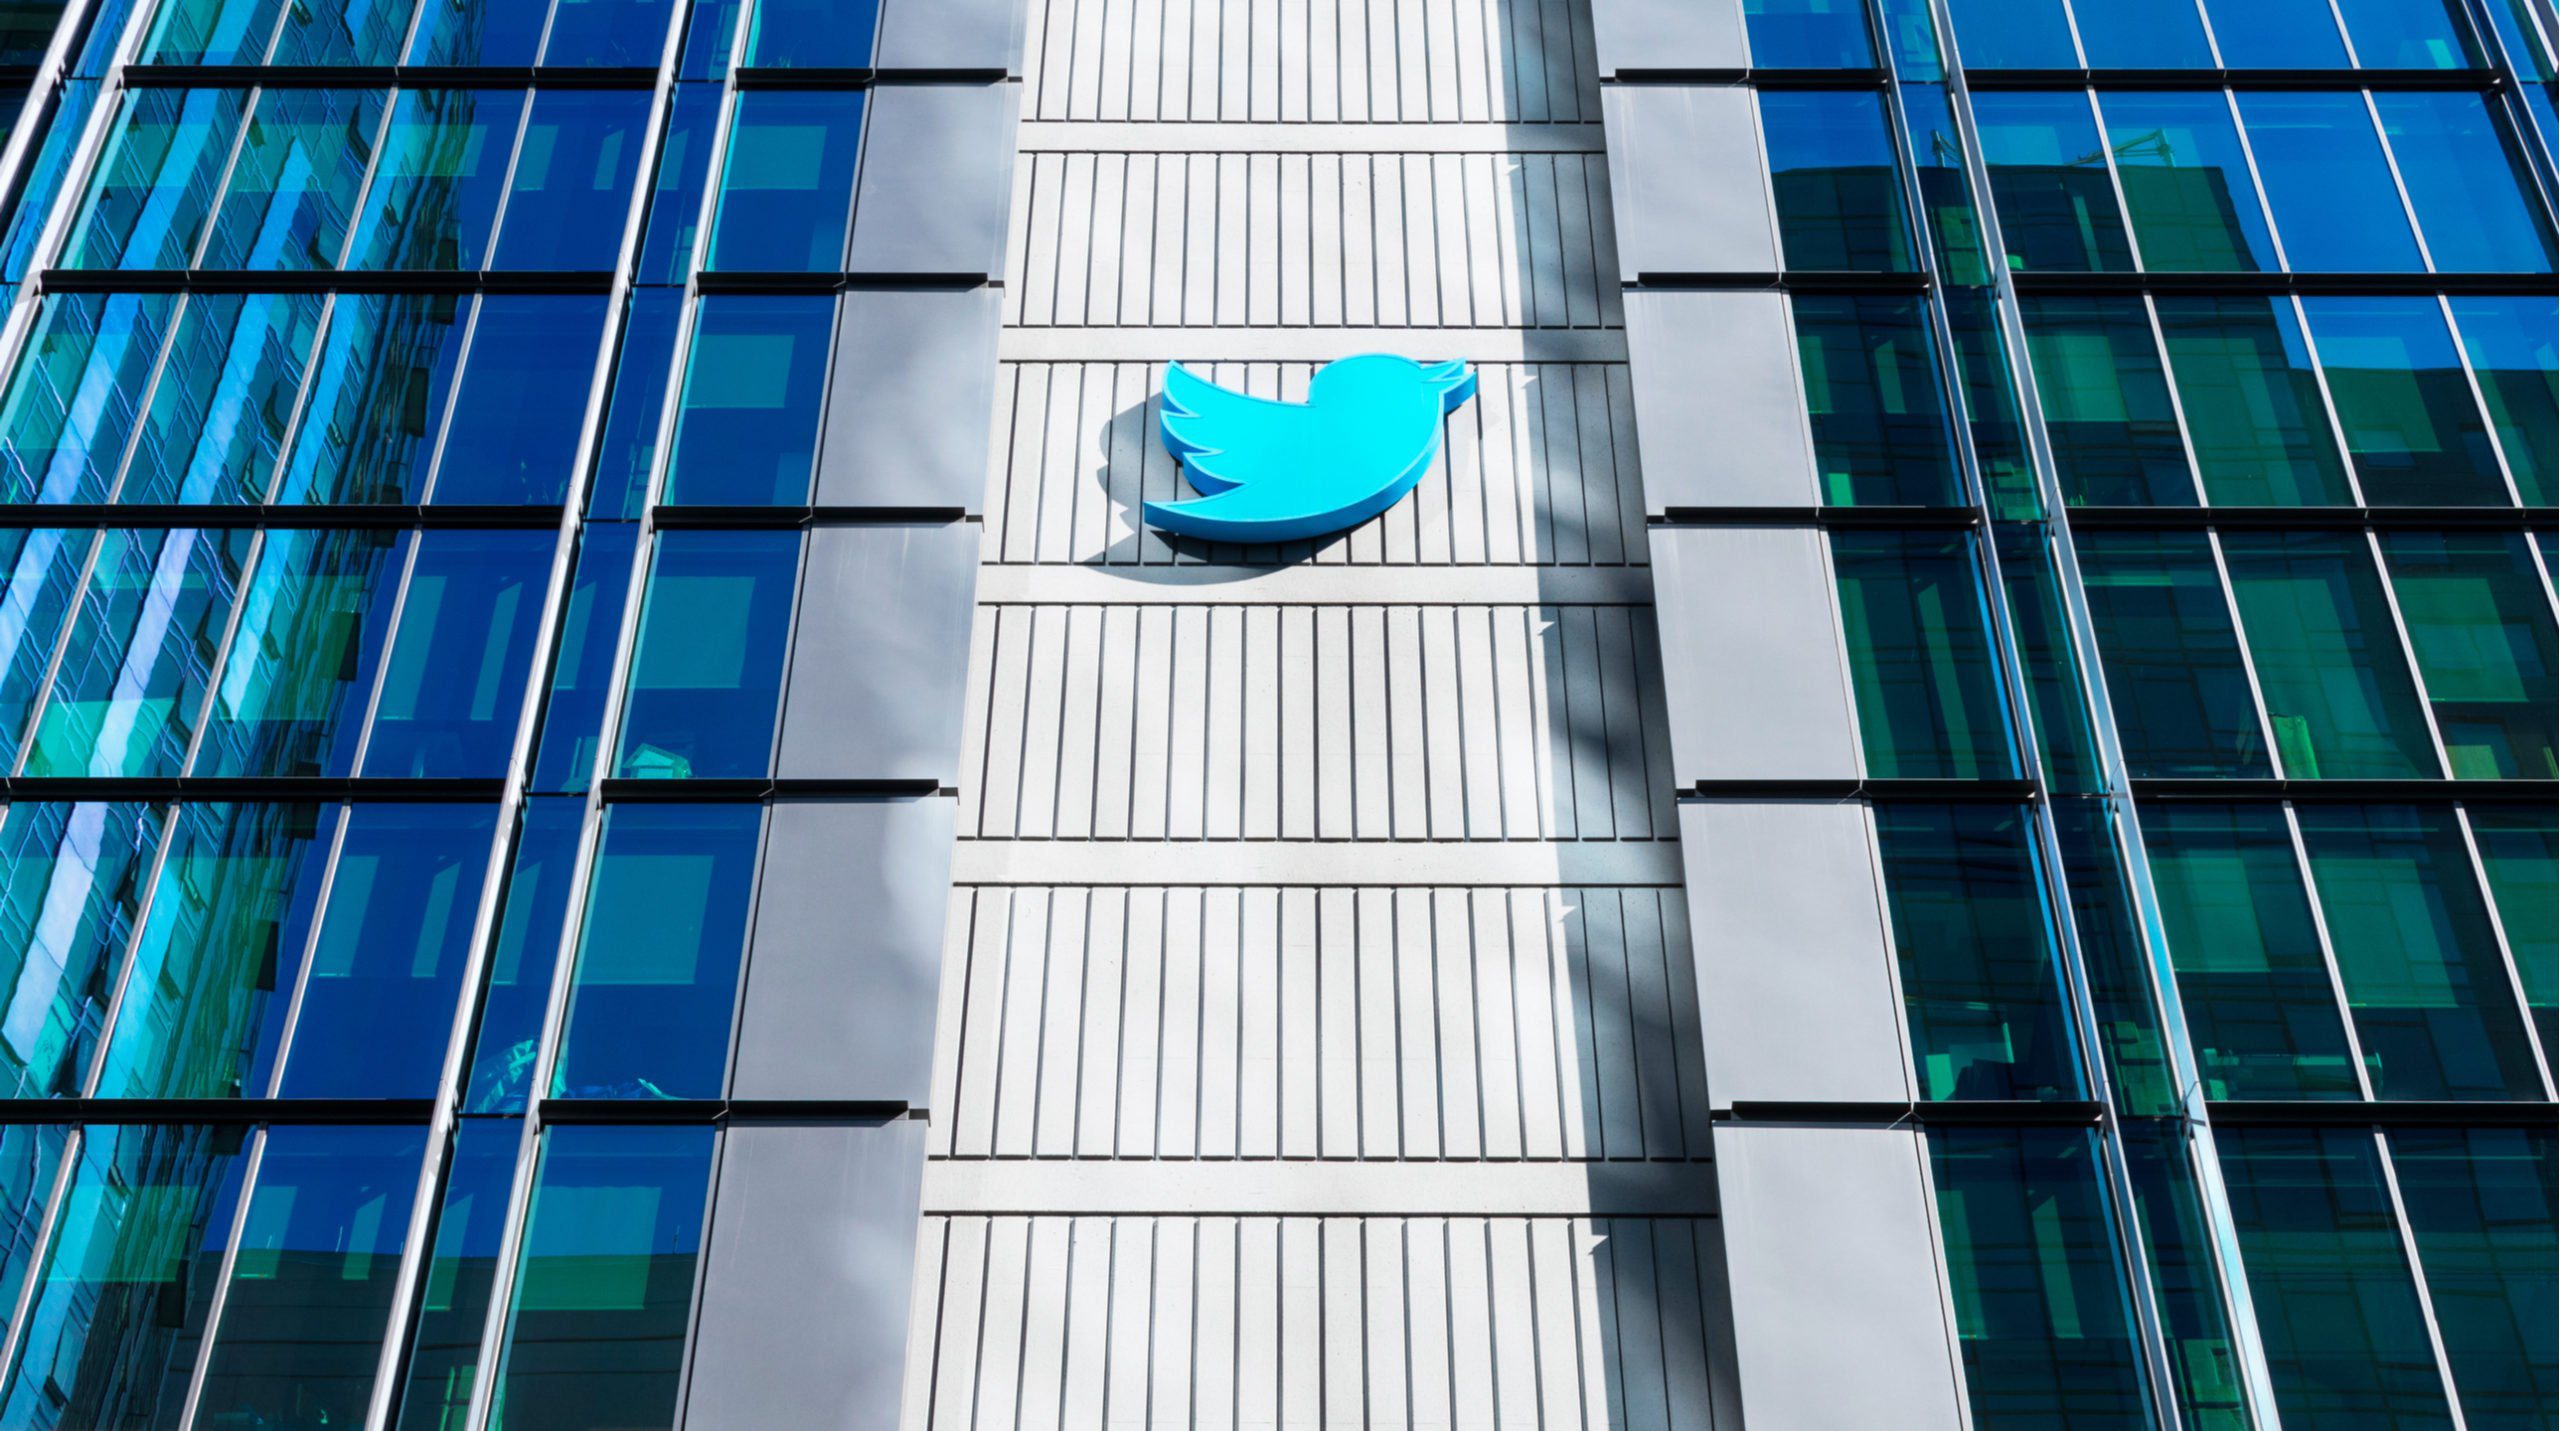  يذكر أن تويتر كانت أعلنت قبل سنوات (في 2017)، طرحها إمكانية كتابة 280 حرفا ضمن التغريدة